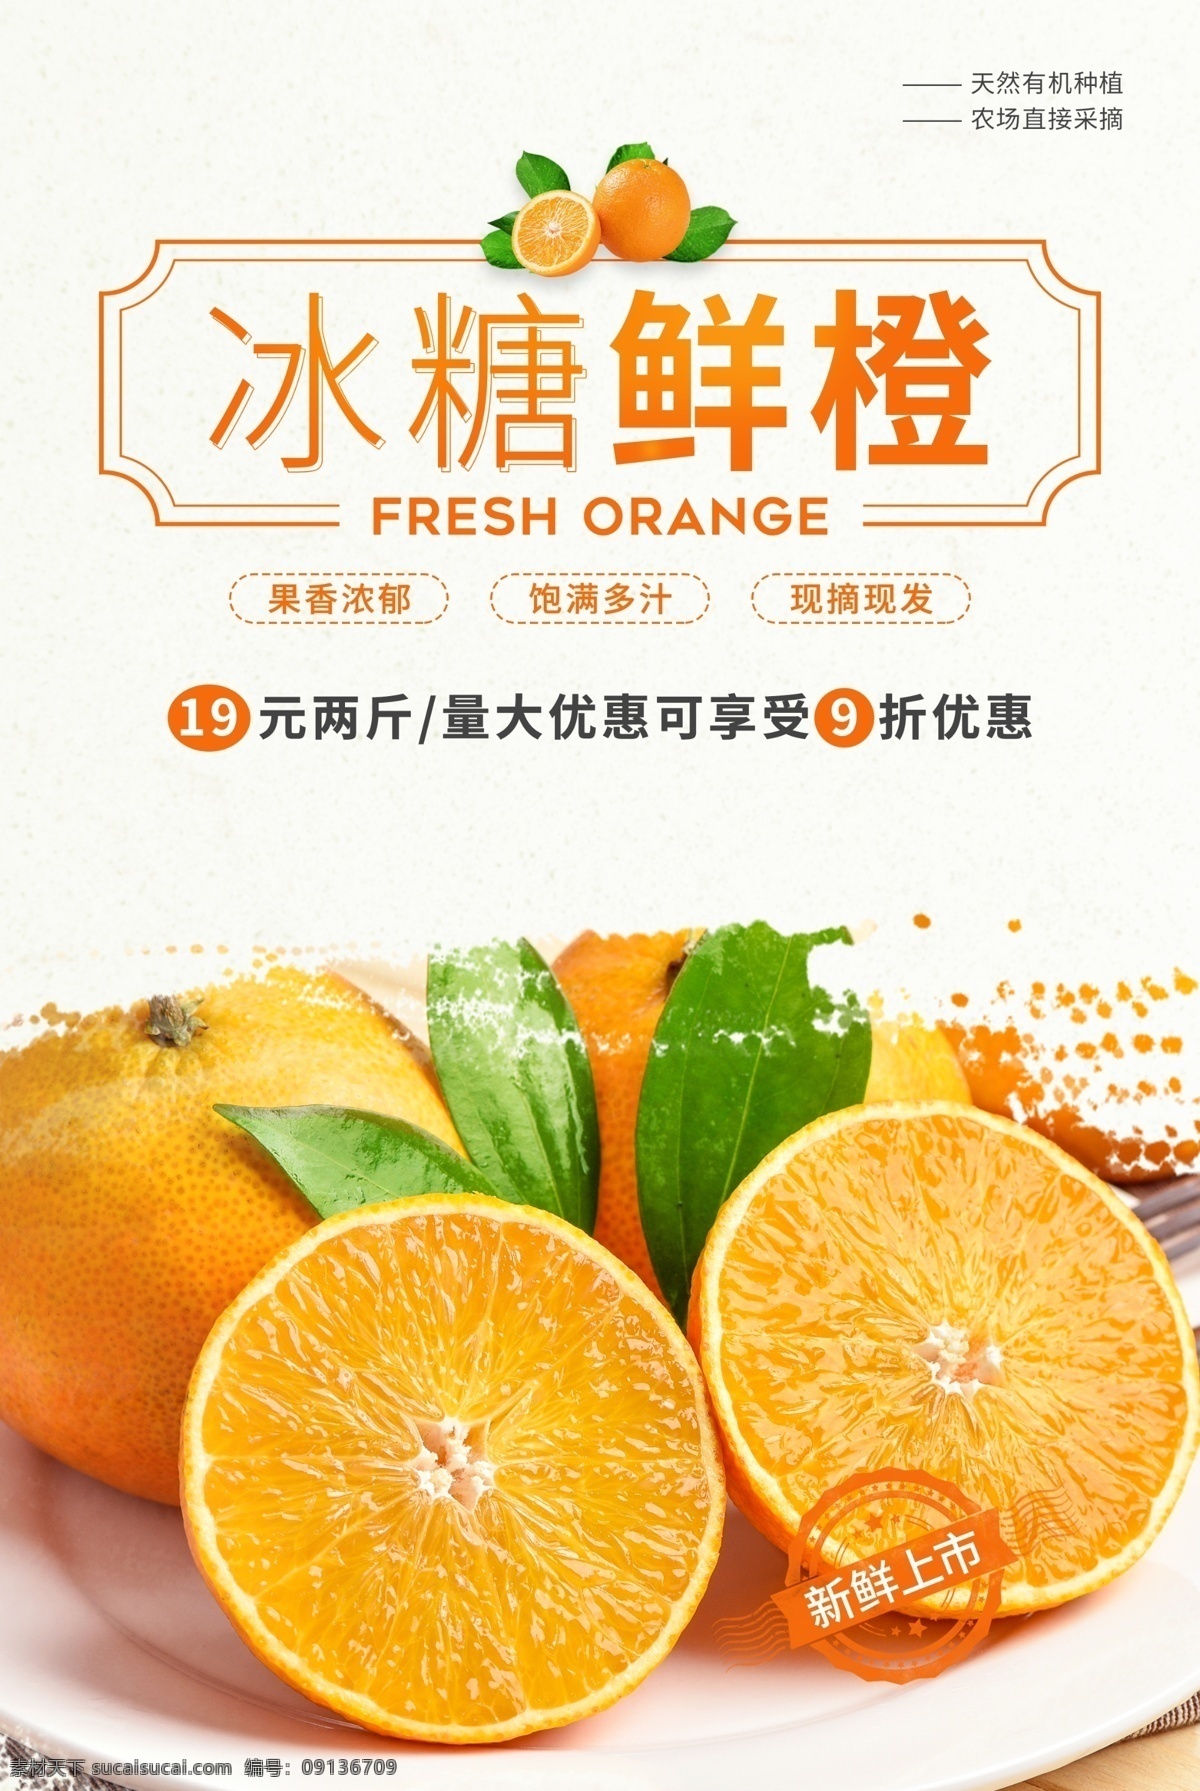 冰糖 鲜橙 水果 促销活动 宣传海报 冰糖鲜橙 促销 活动 宣传 海报 餐饮美食 类